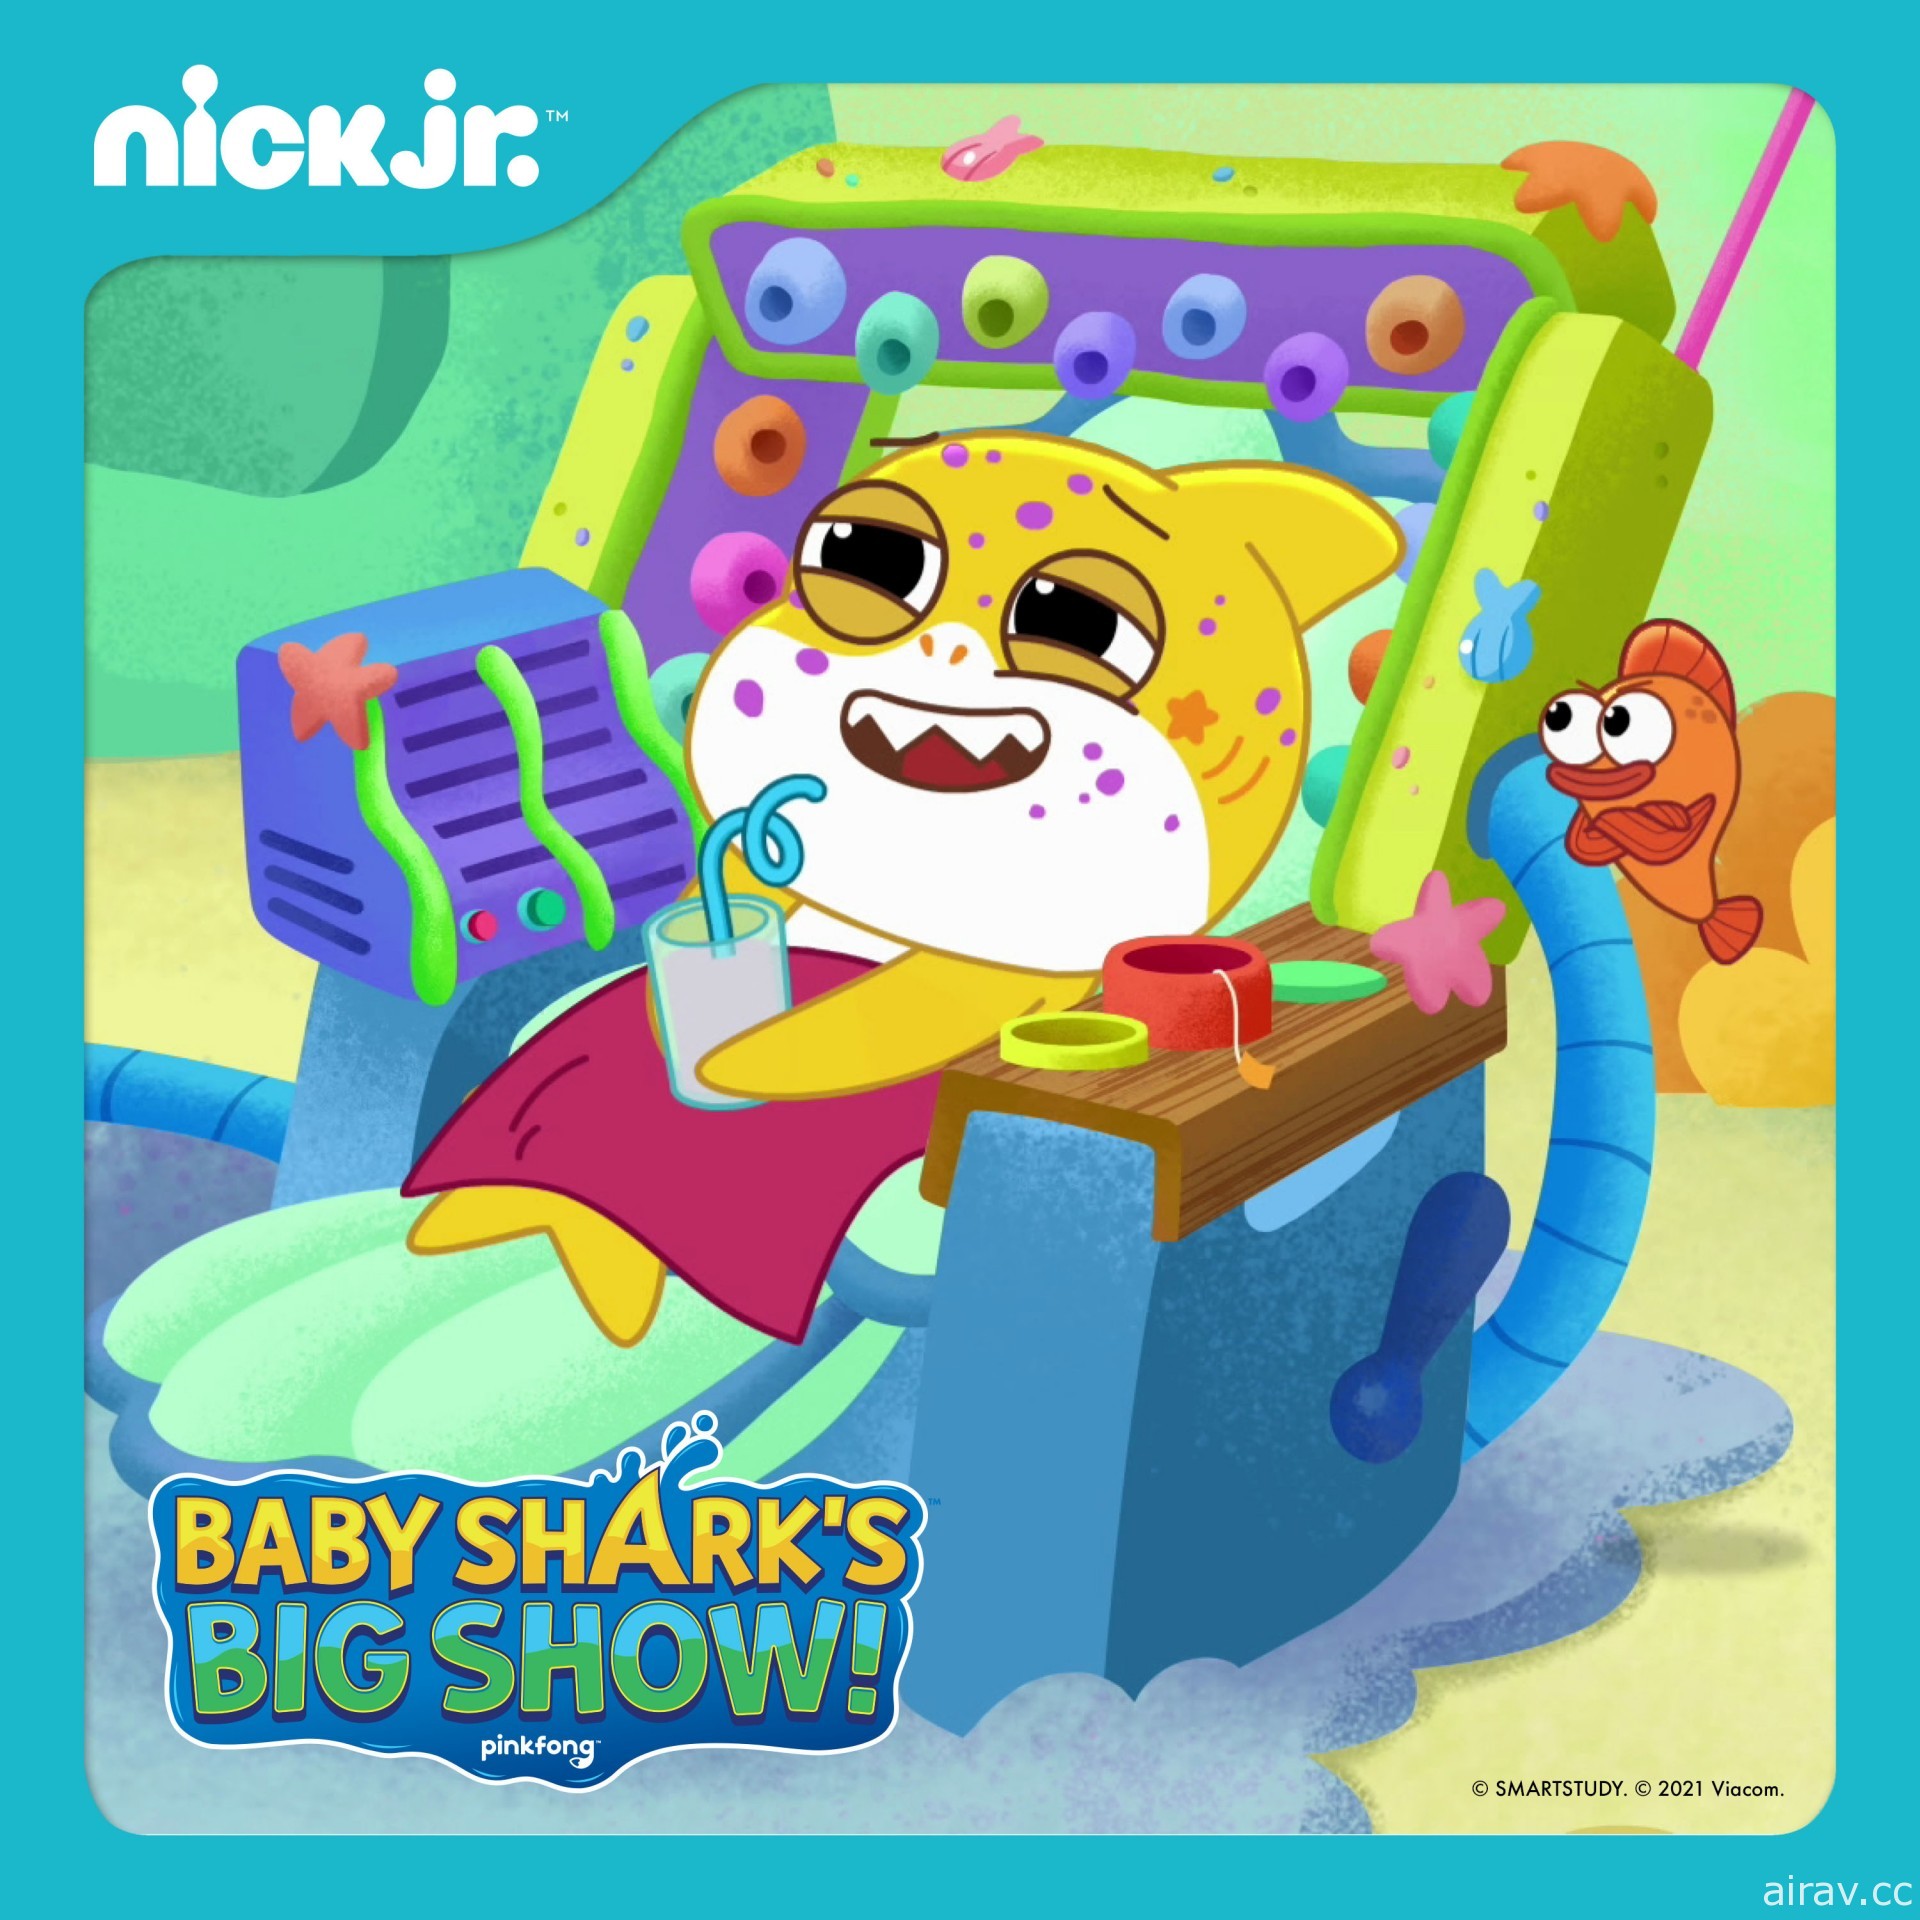 杰德影音宣布 1 月起「尼克兒童頻道」與「Nick Jr. 兒童頻道」將進駐有線電視